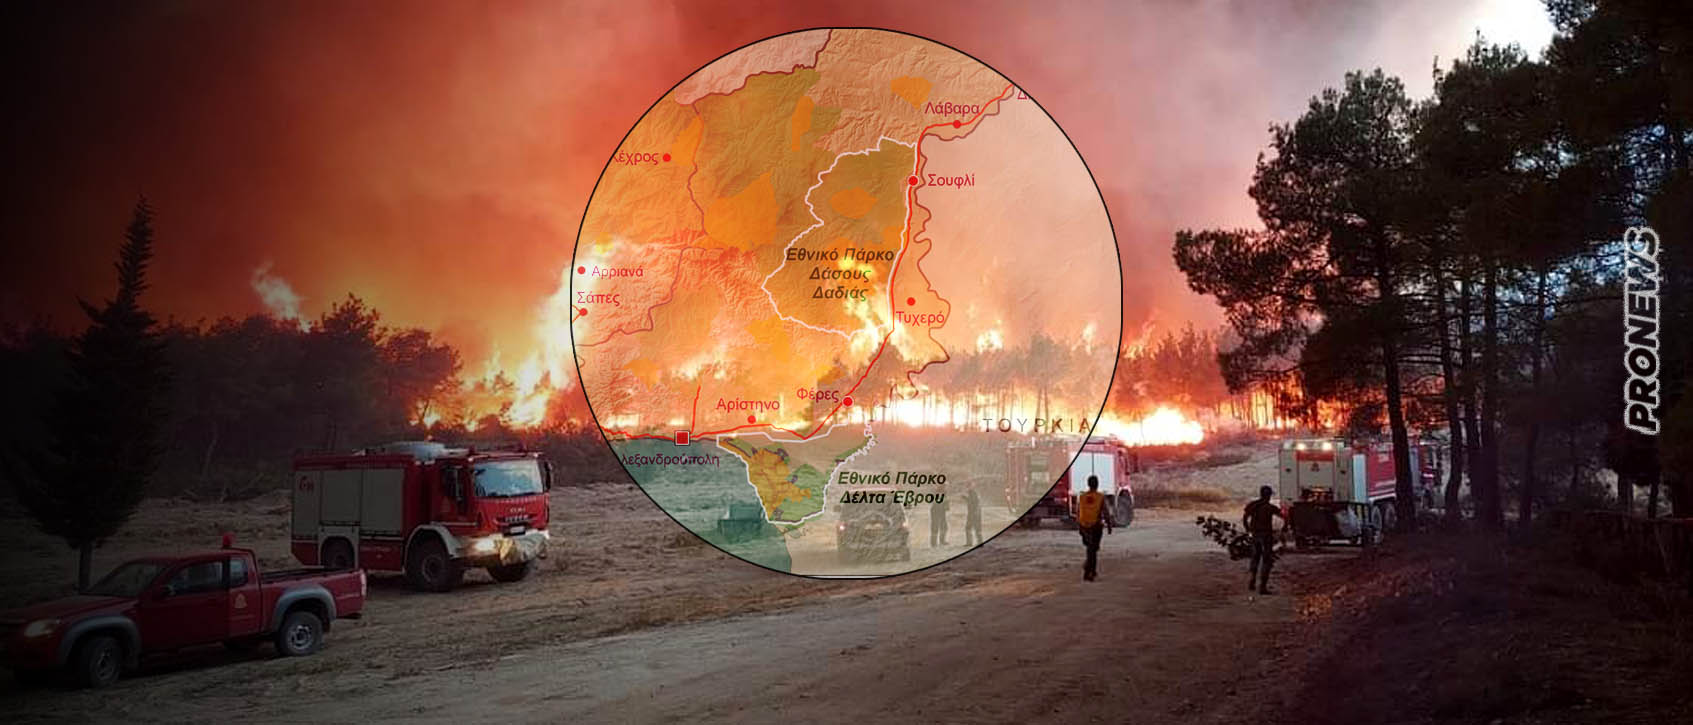 Καίγεται ξανά το δάσος της Δαδιάς: Το «επιτελικό κράτος» για άλλη μία φορά δεν μπορεί να προστατέψει την χώρα